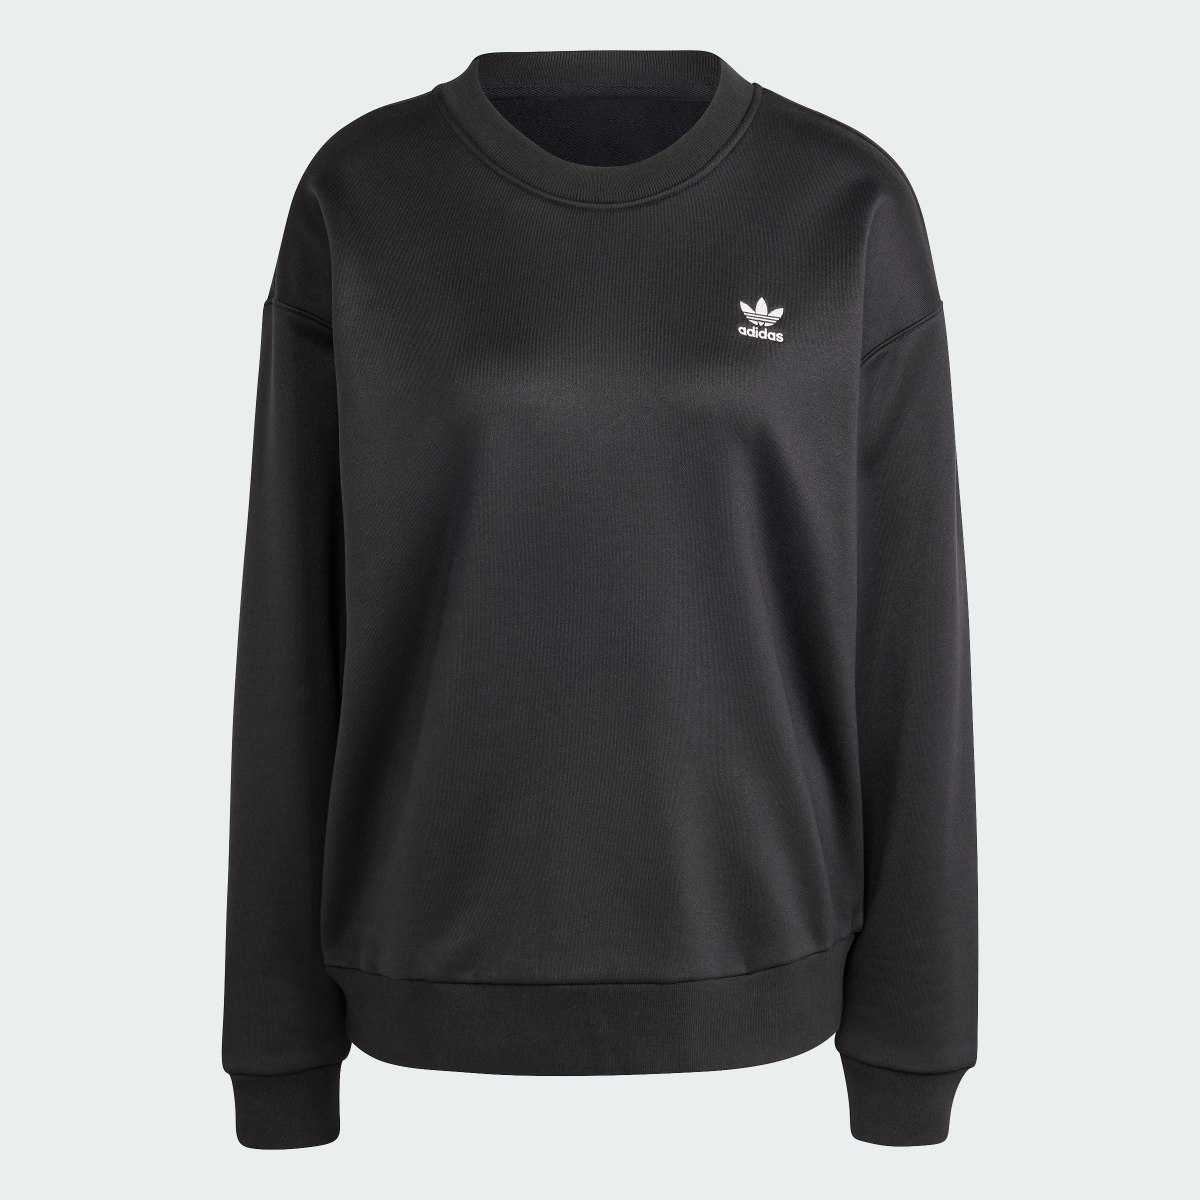 Adidas Trefoil Loose Sweatshirt. 5